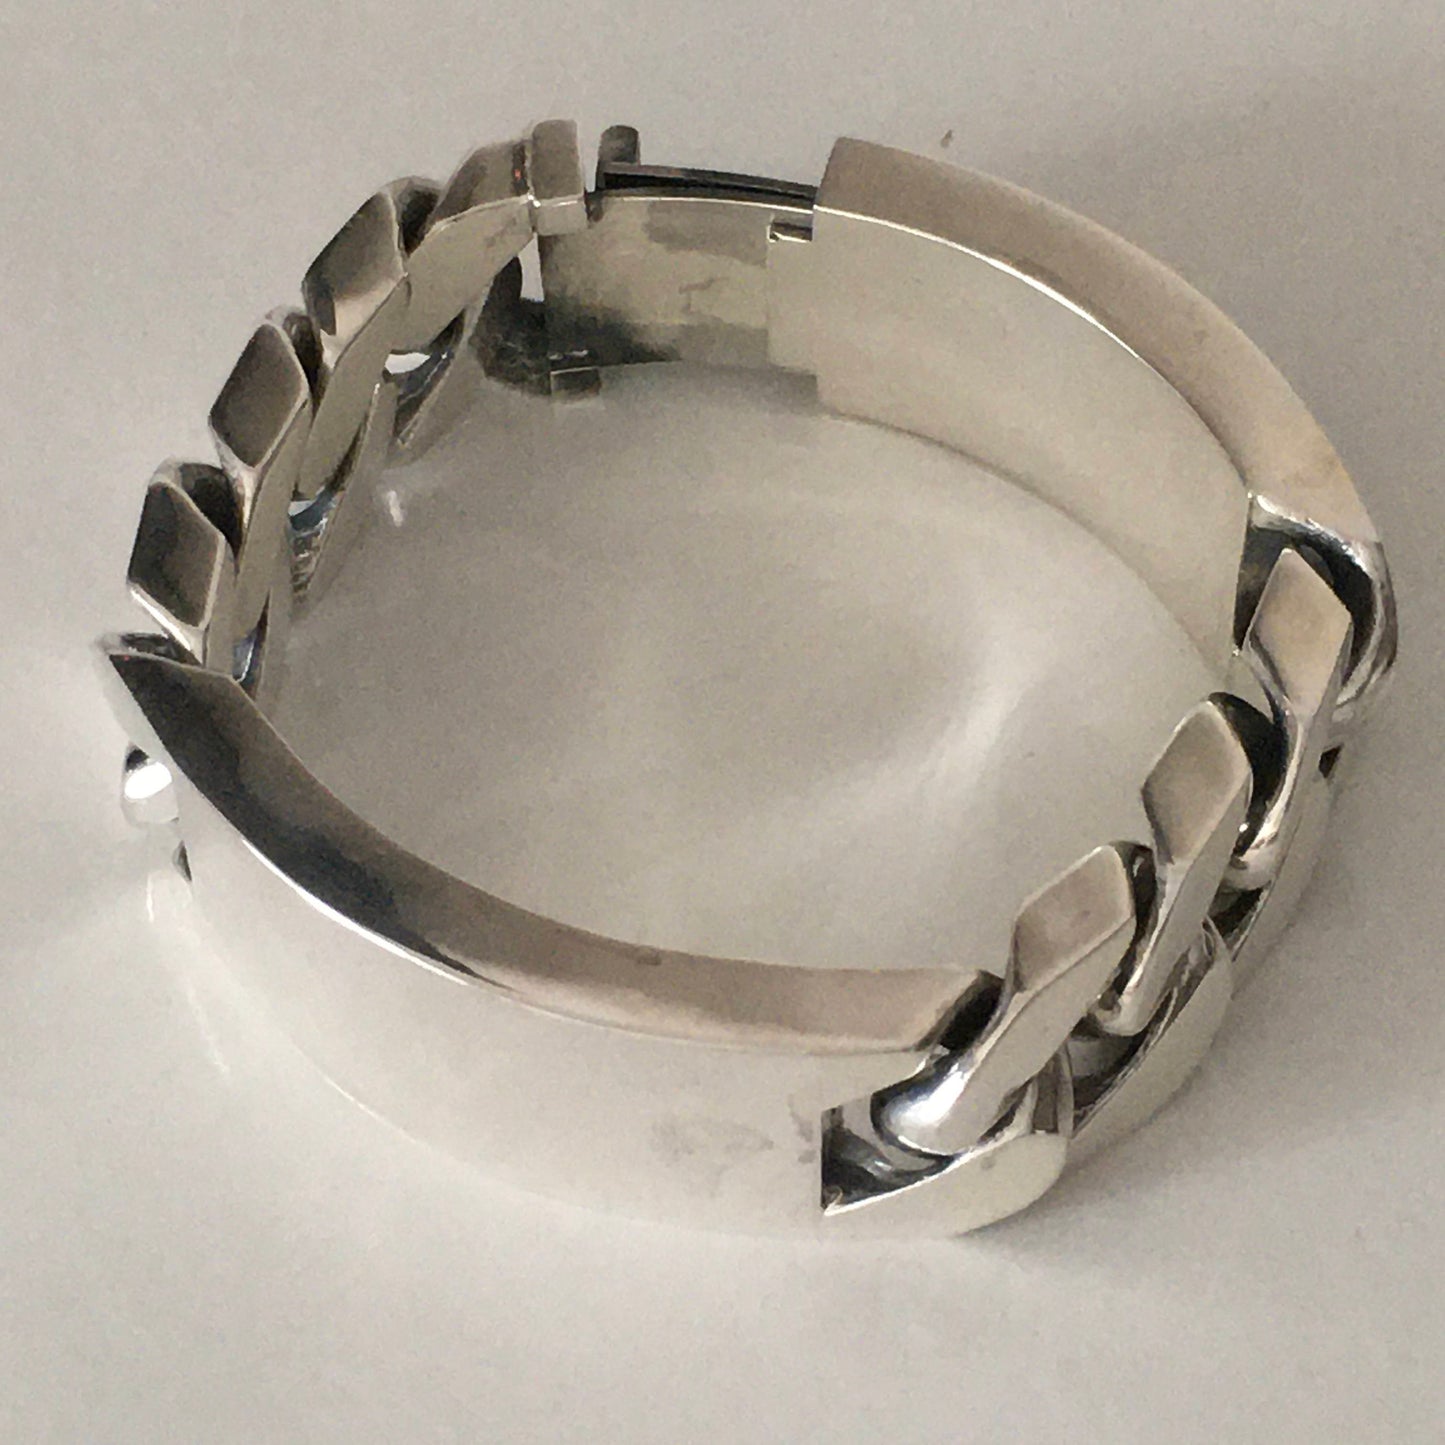 Double Plate Identity Bracelet - 22mm Wide